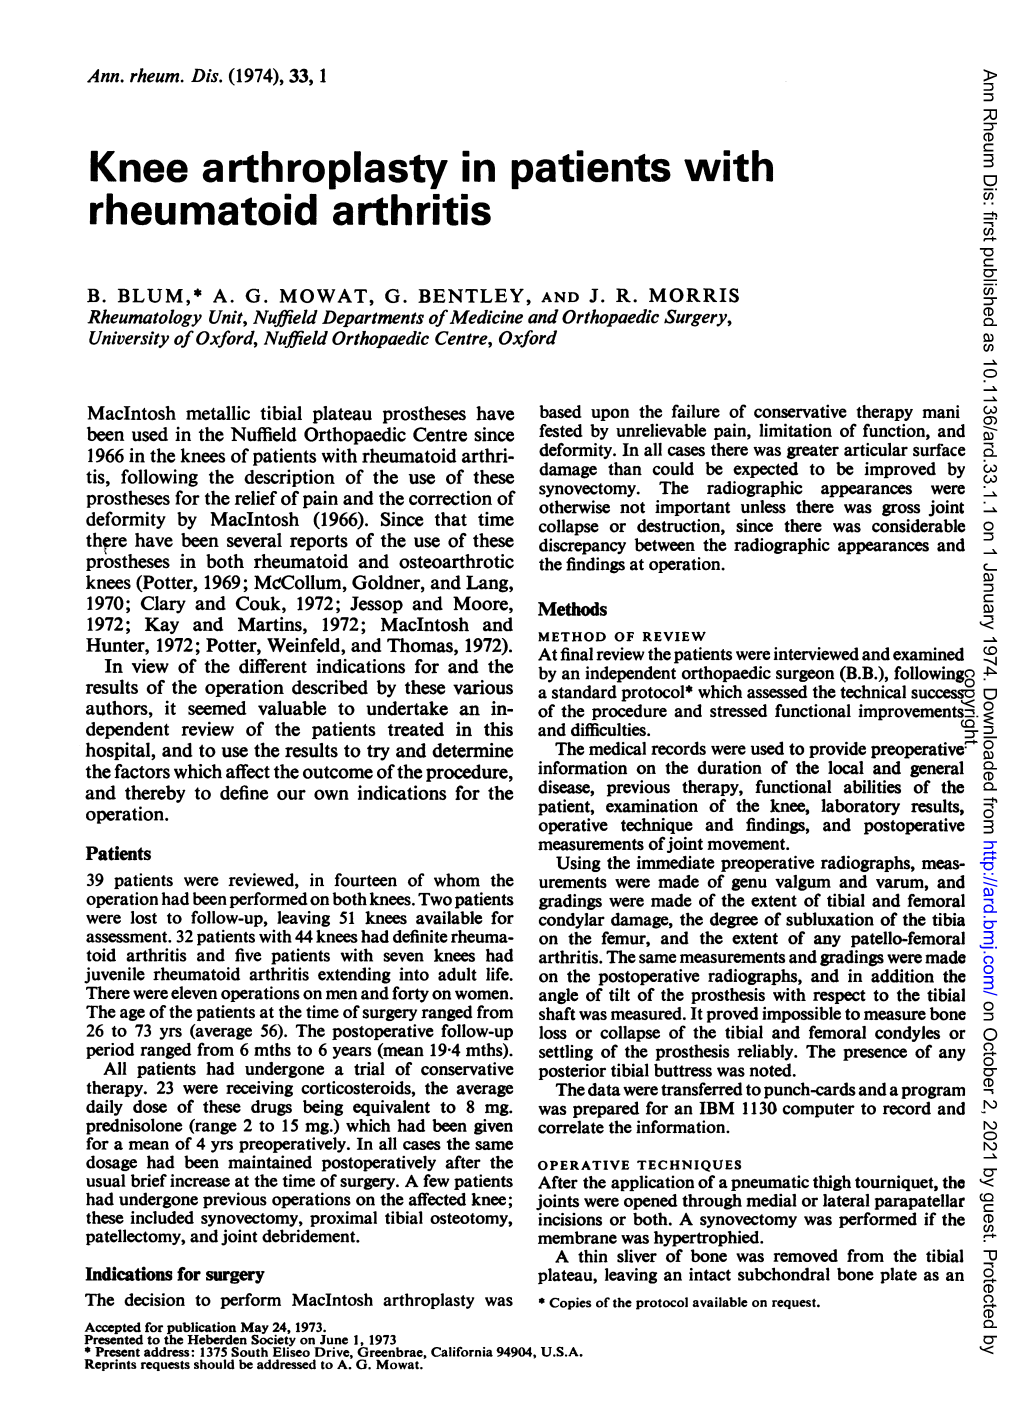 Knee Arthroplasty in Patients with Rheumatoid Arthritis